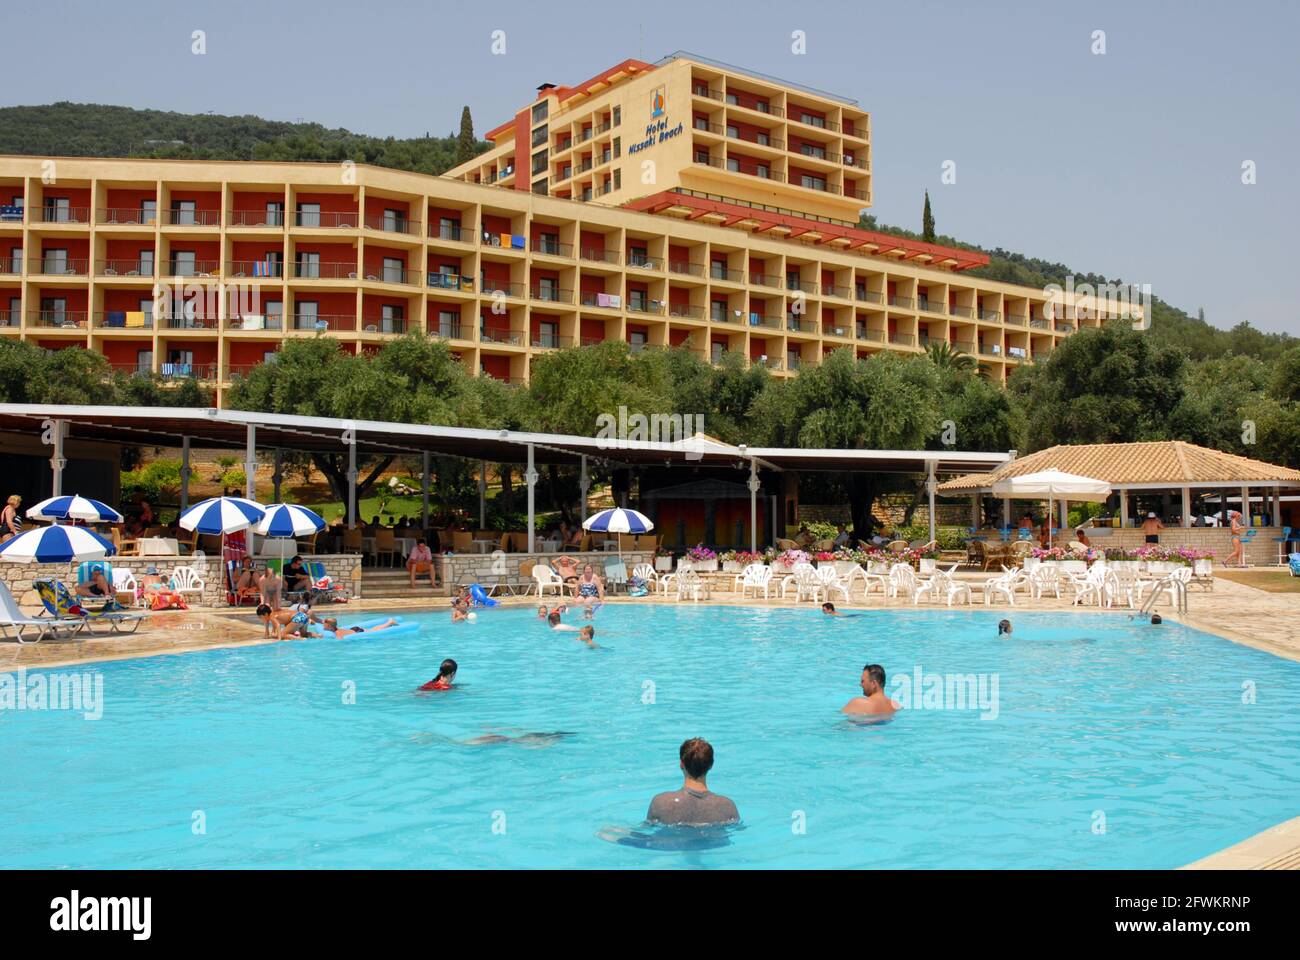 People enjoying a casual swim in the hotel pool, Nissaki Beach, Corfu, Greece Stock Photo